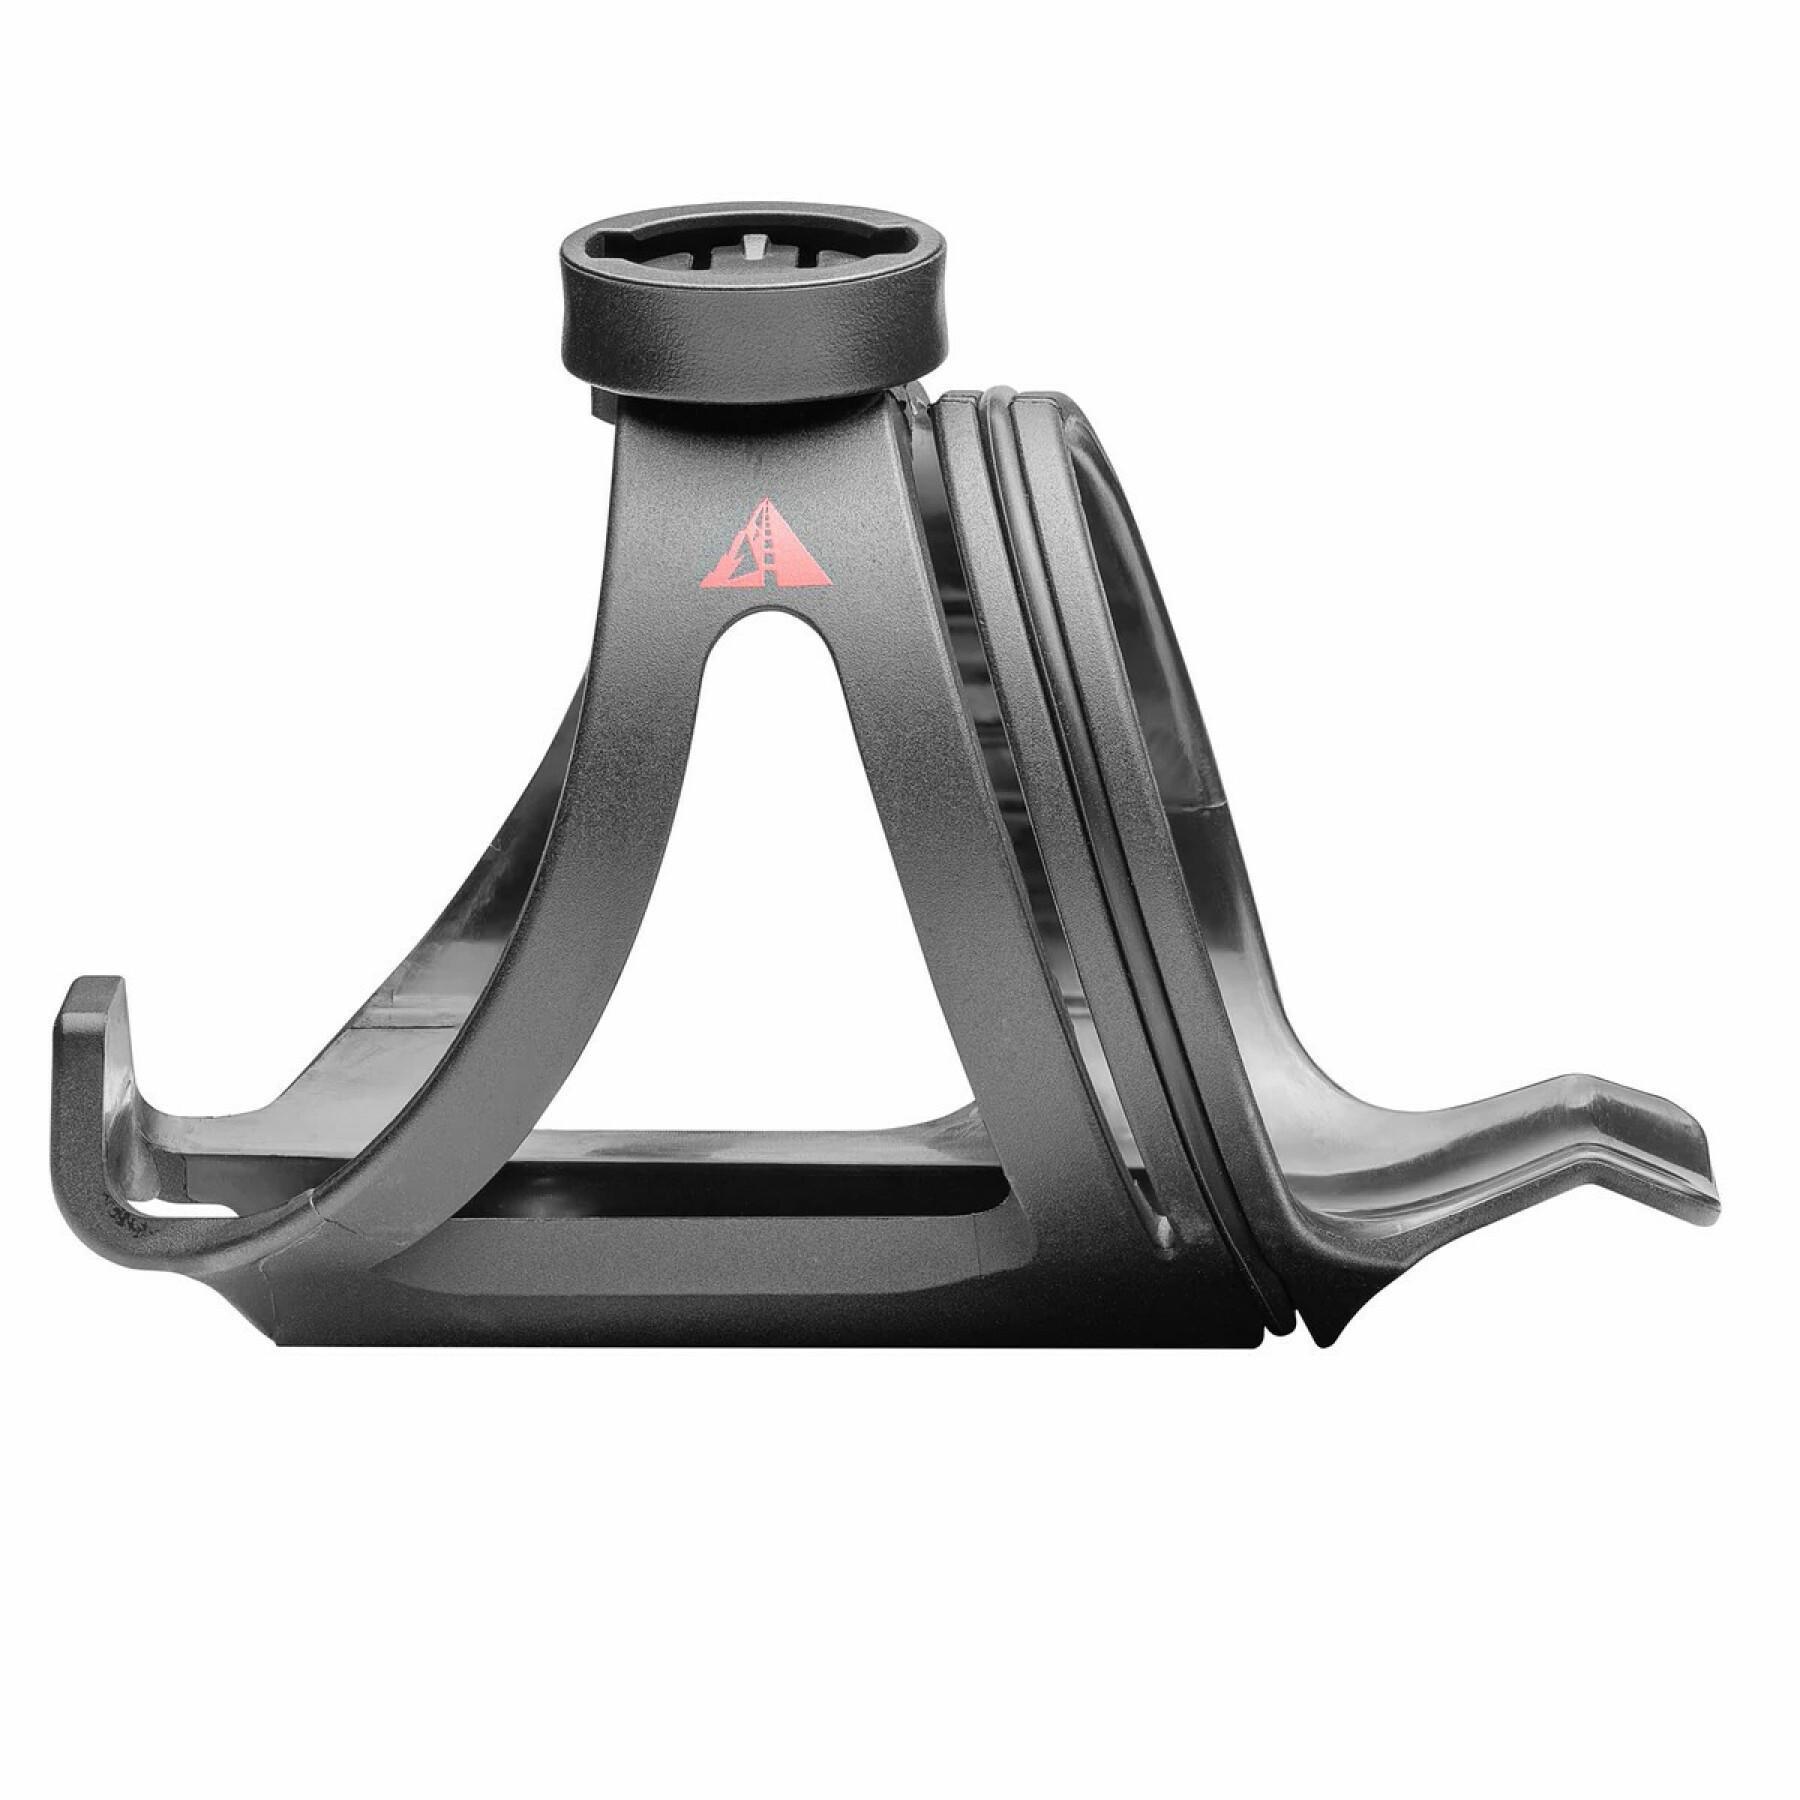 Hållare för vattenflaska och vattenflaska med stativ Profile Design Axis Grip Kage